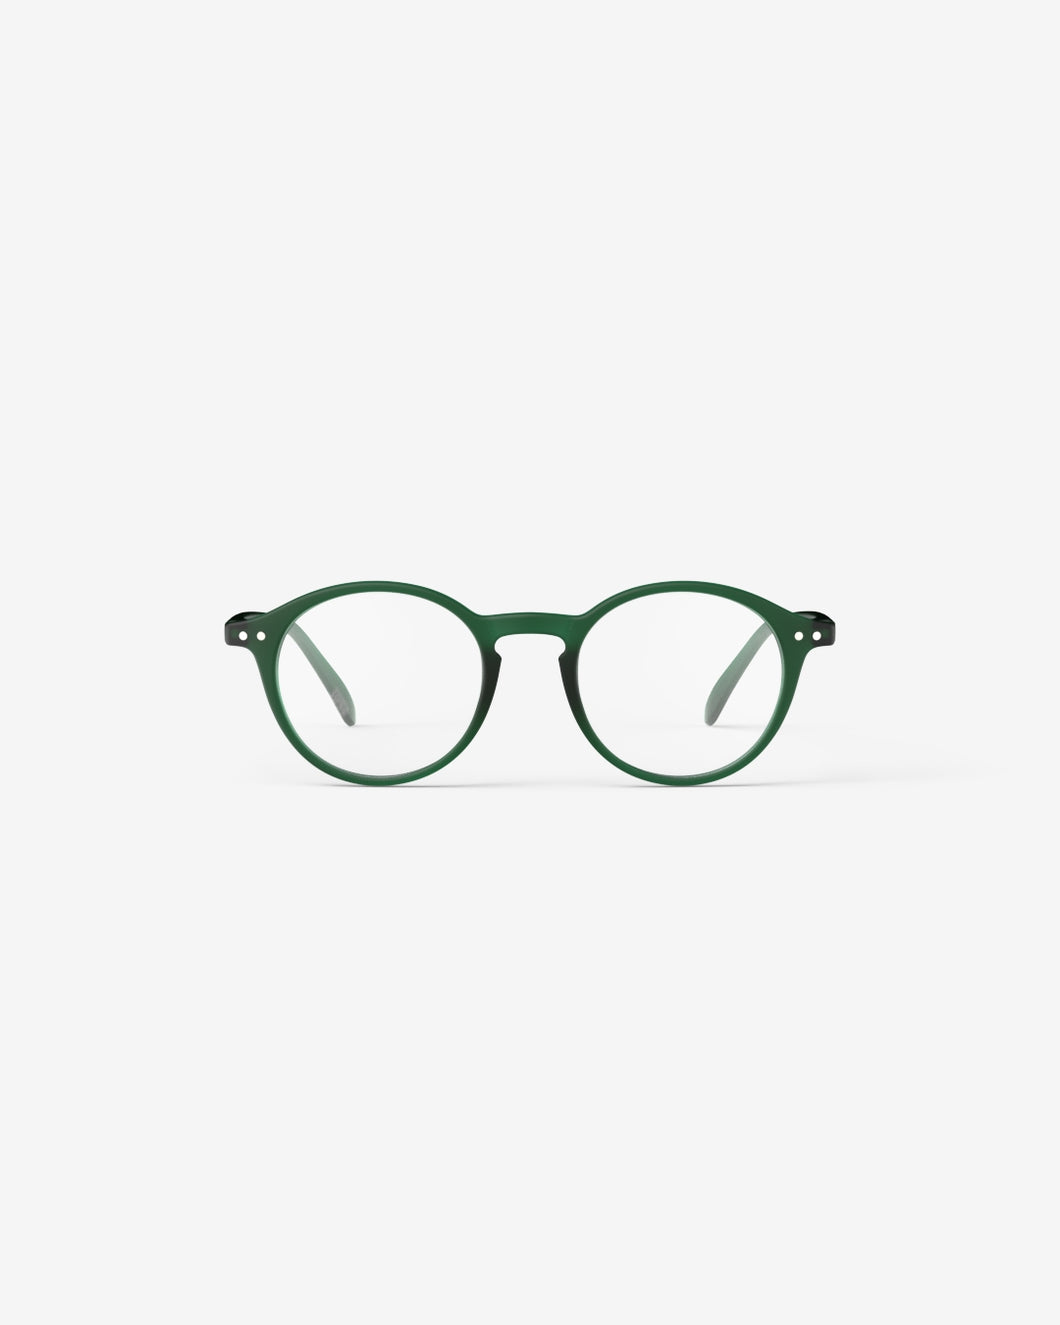 Izipizi Reading Glasses Green #D